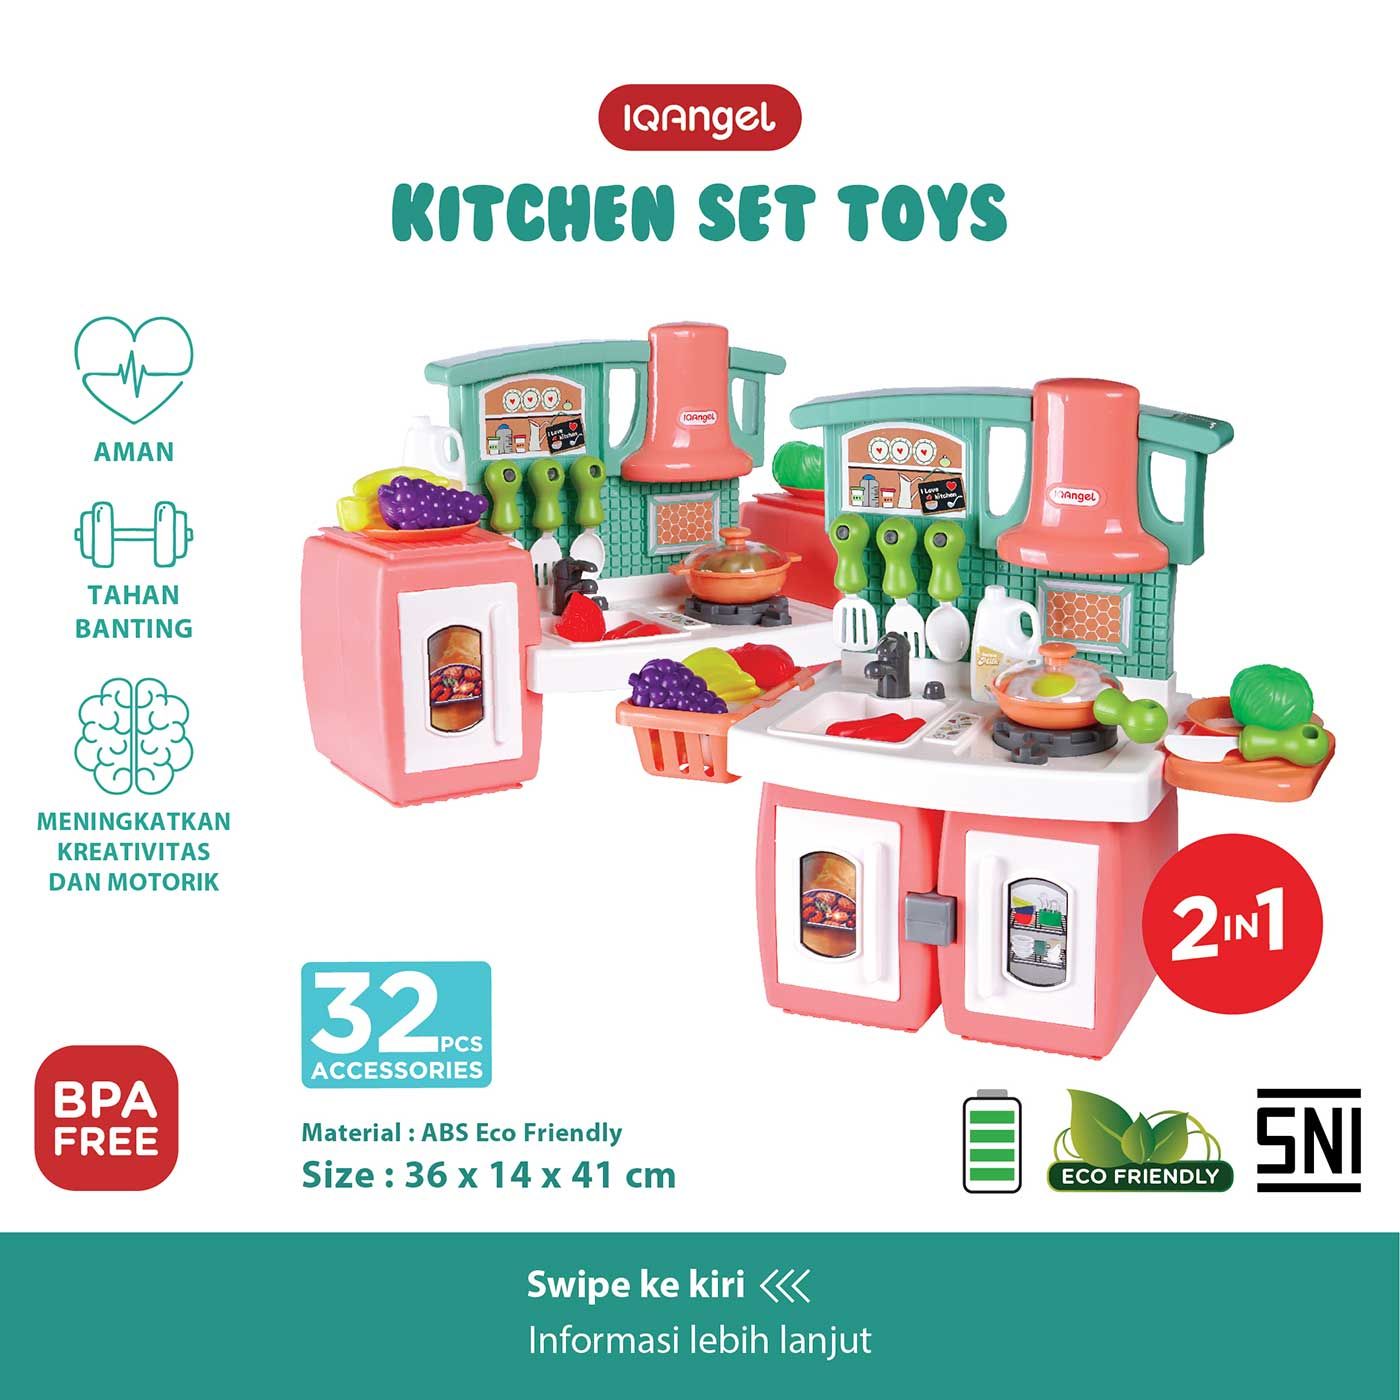 IQ Angel Kitchen Set Toys - 12